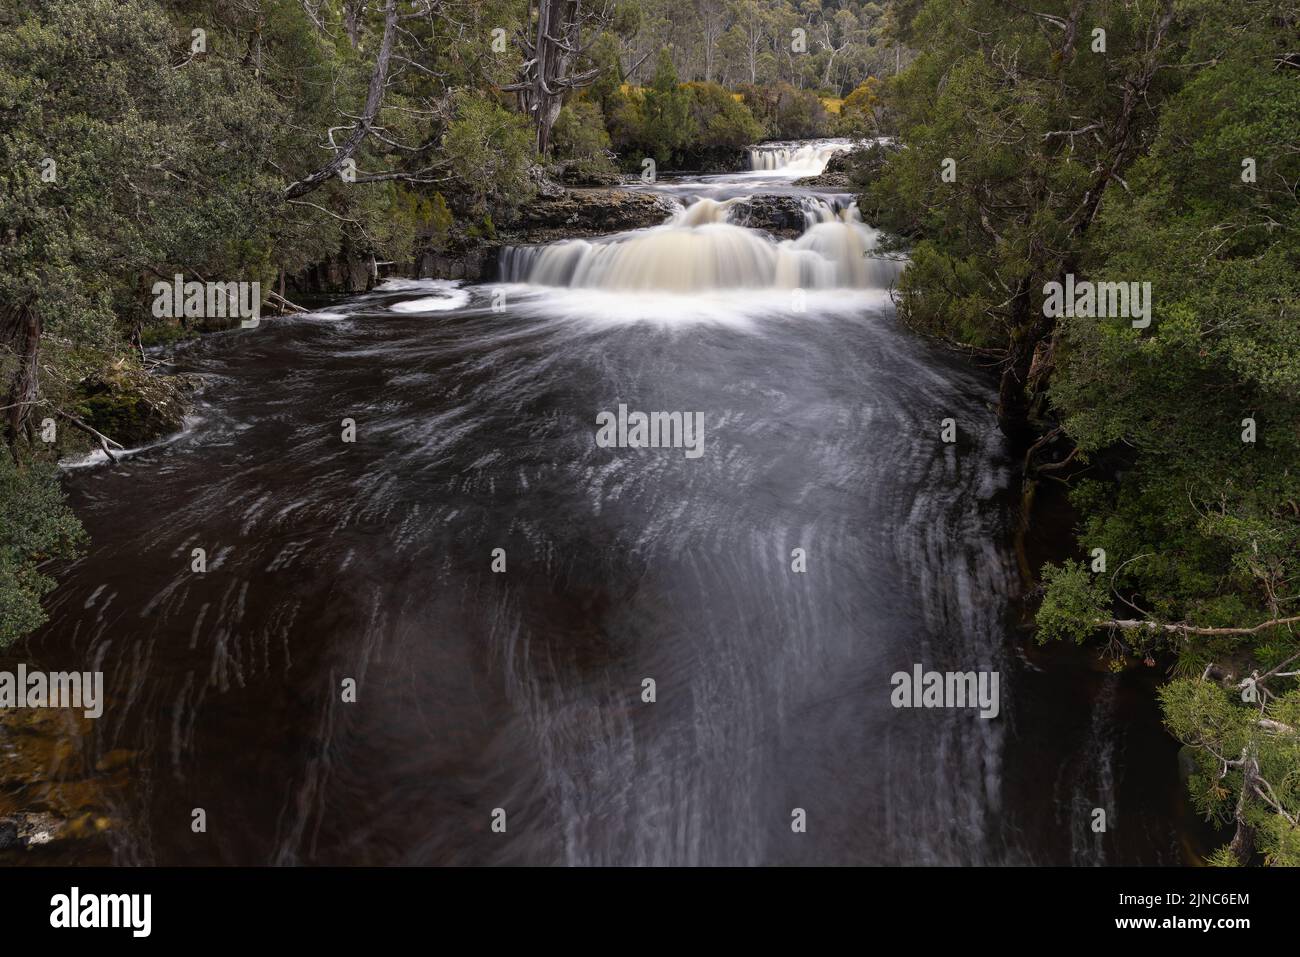 fotografía de exposición larga de la cascada de pino lápiz en el parque nacional de cradle mountain en tasmania, australia Foto de stock